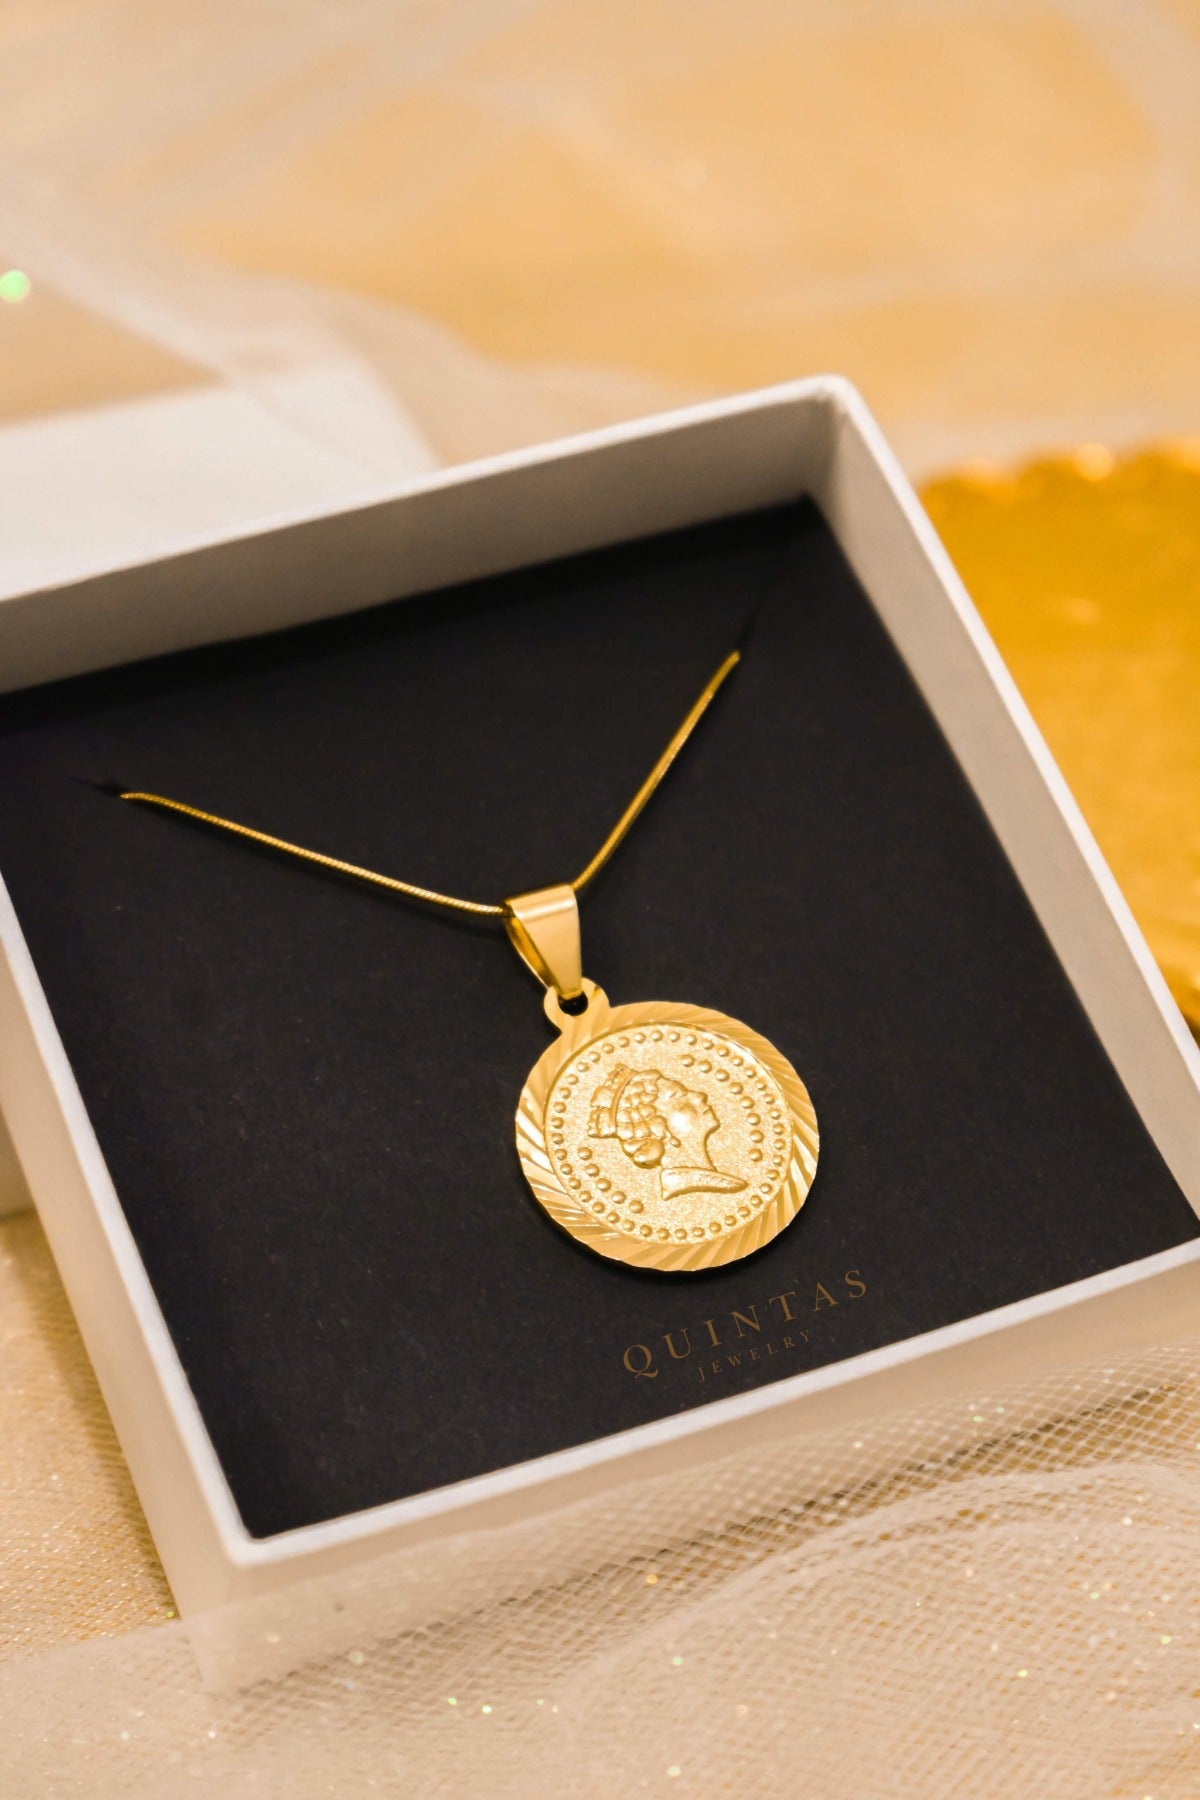 Queen Elizabeth Medallion Necklace